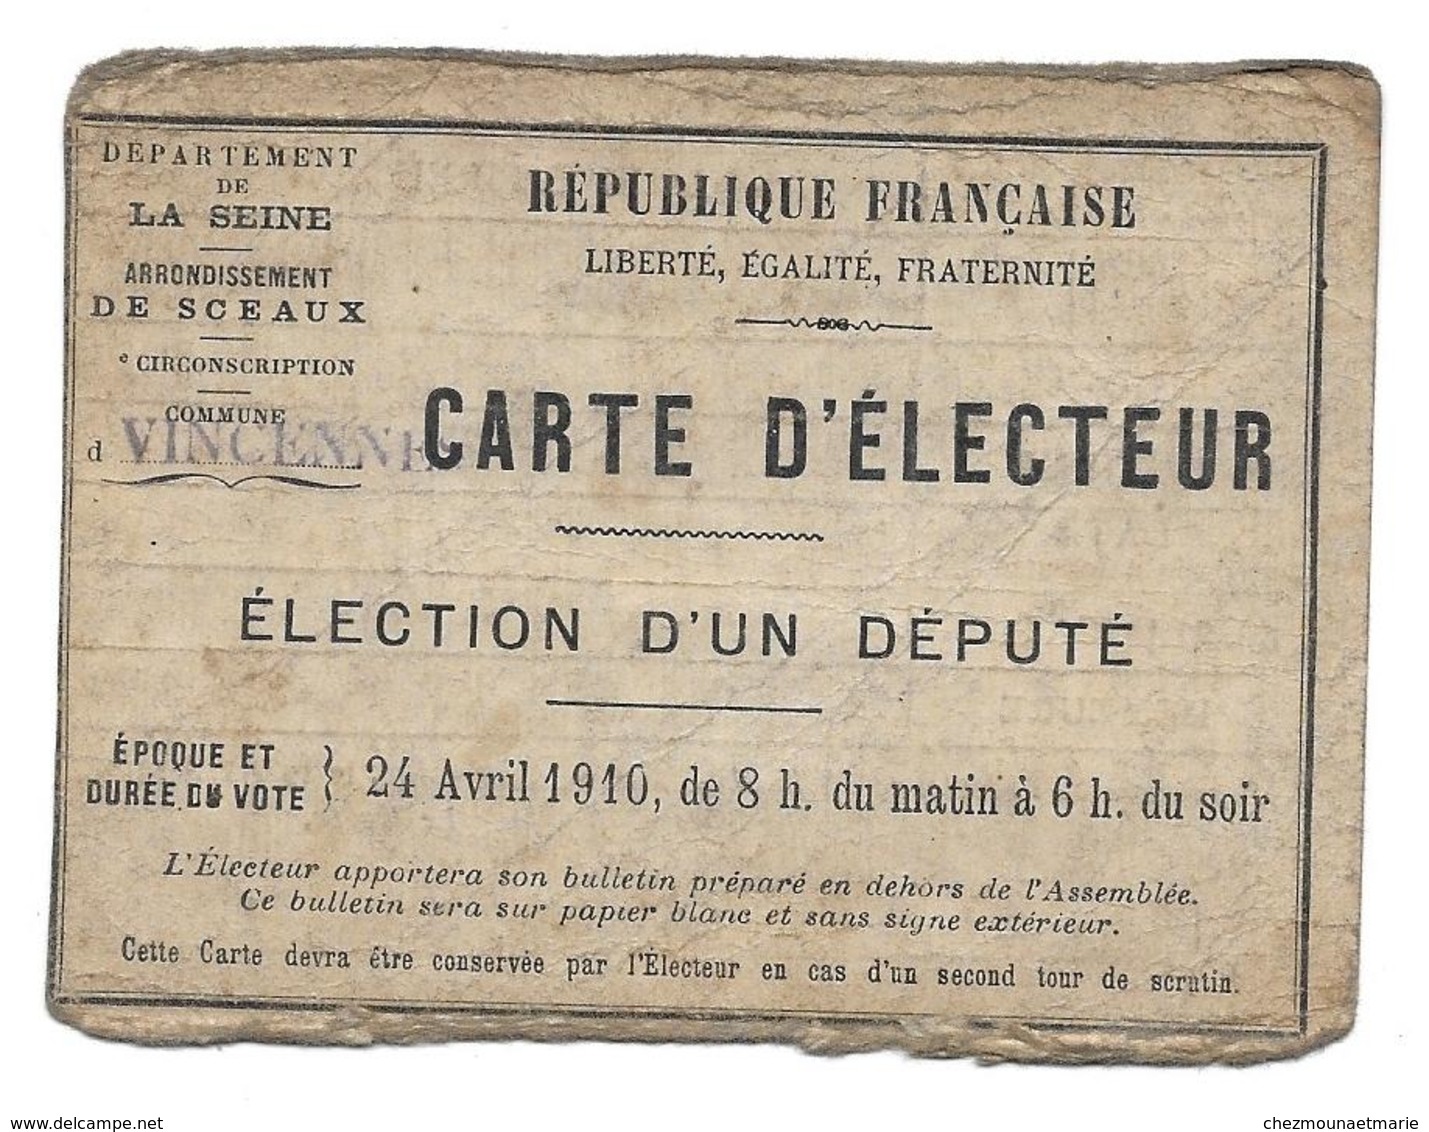 CARTE D ELECTEUR MERCIER 1886 PEINTRE ELECTION AVRIL 1910 DEPUTE VINCENNES - Historical Documents